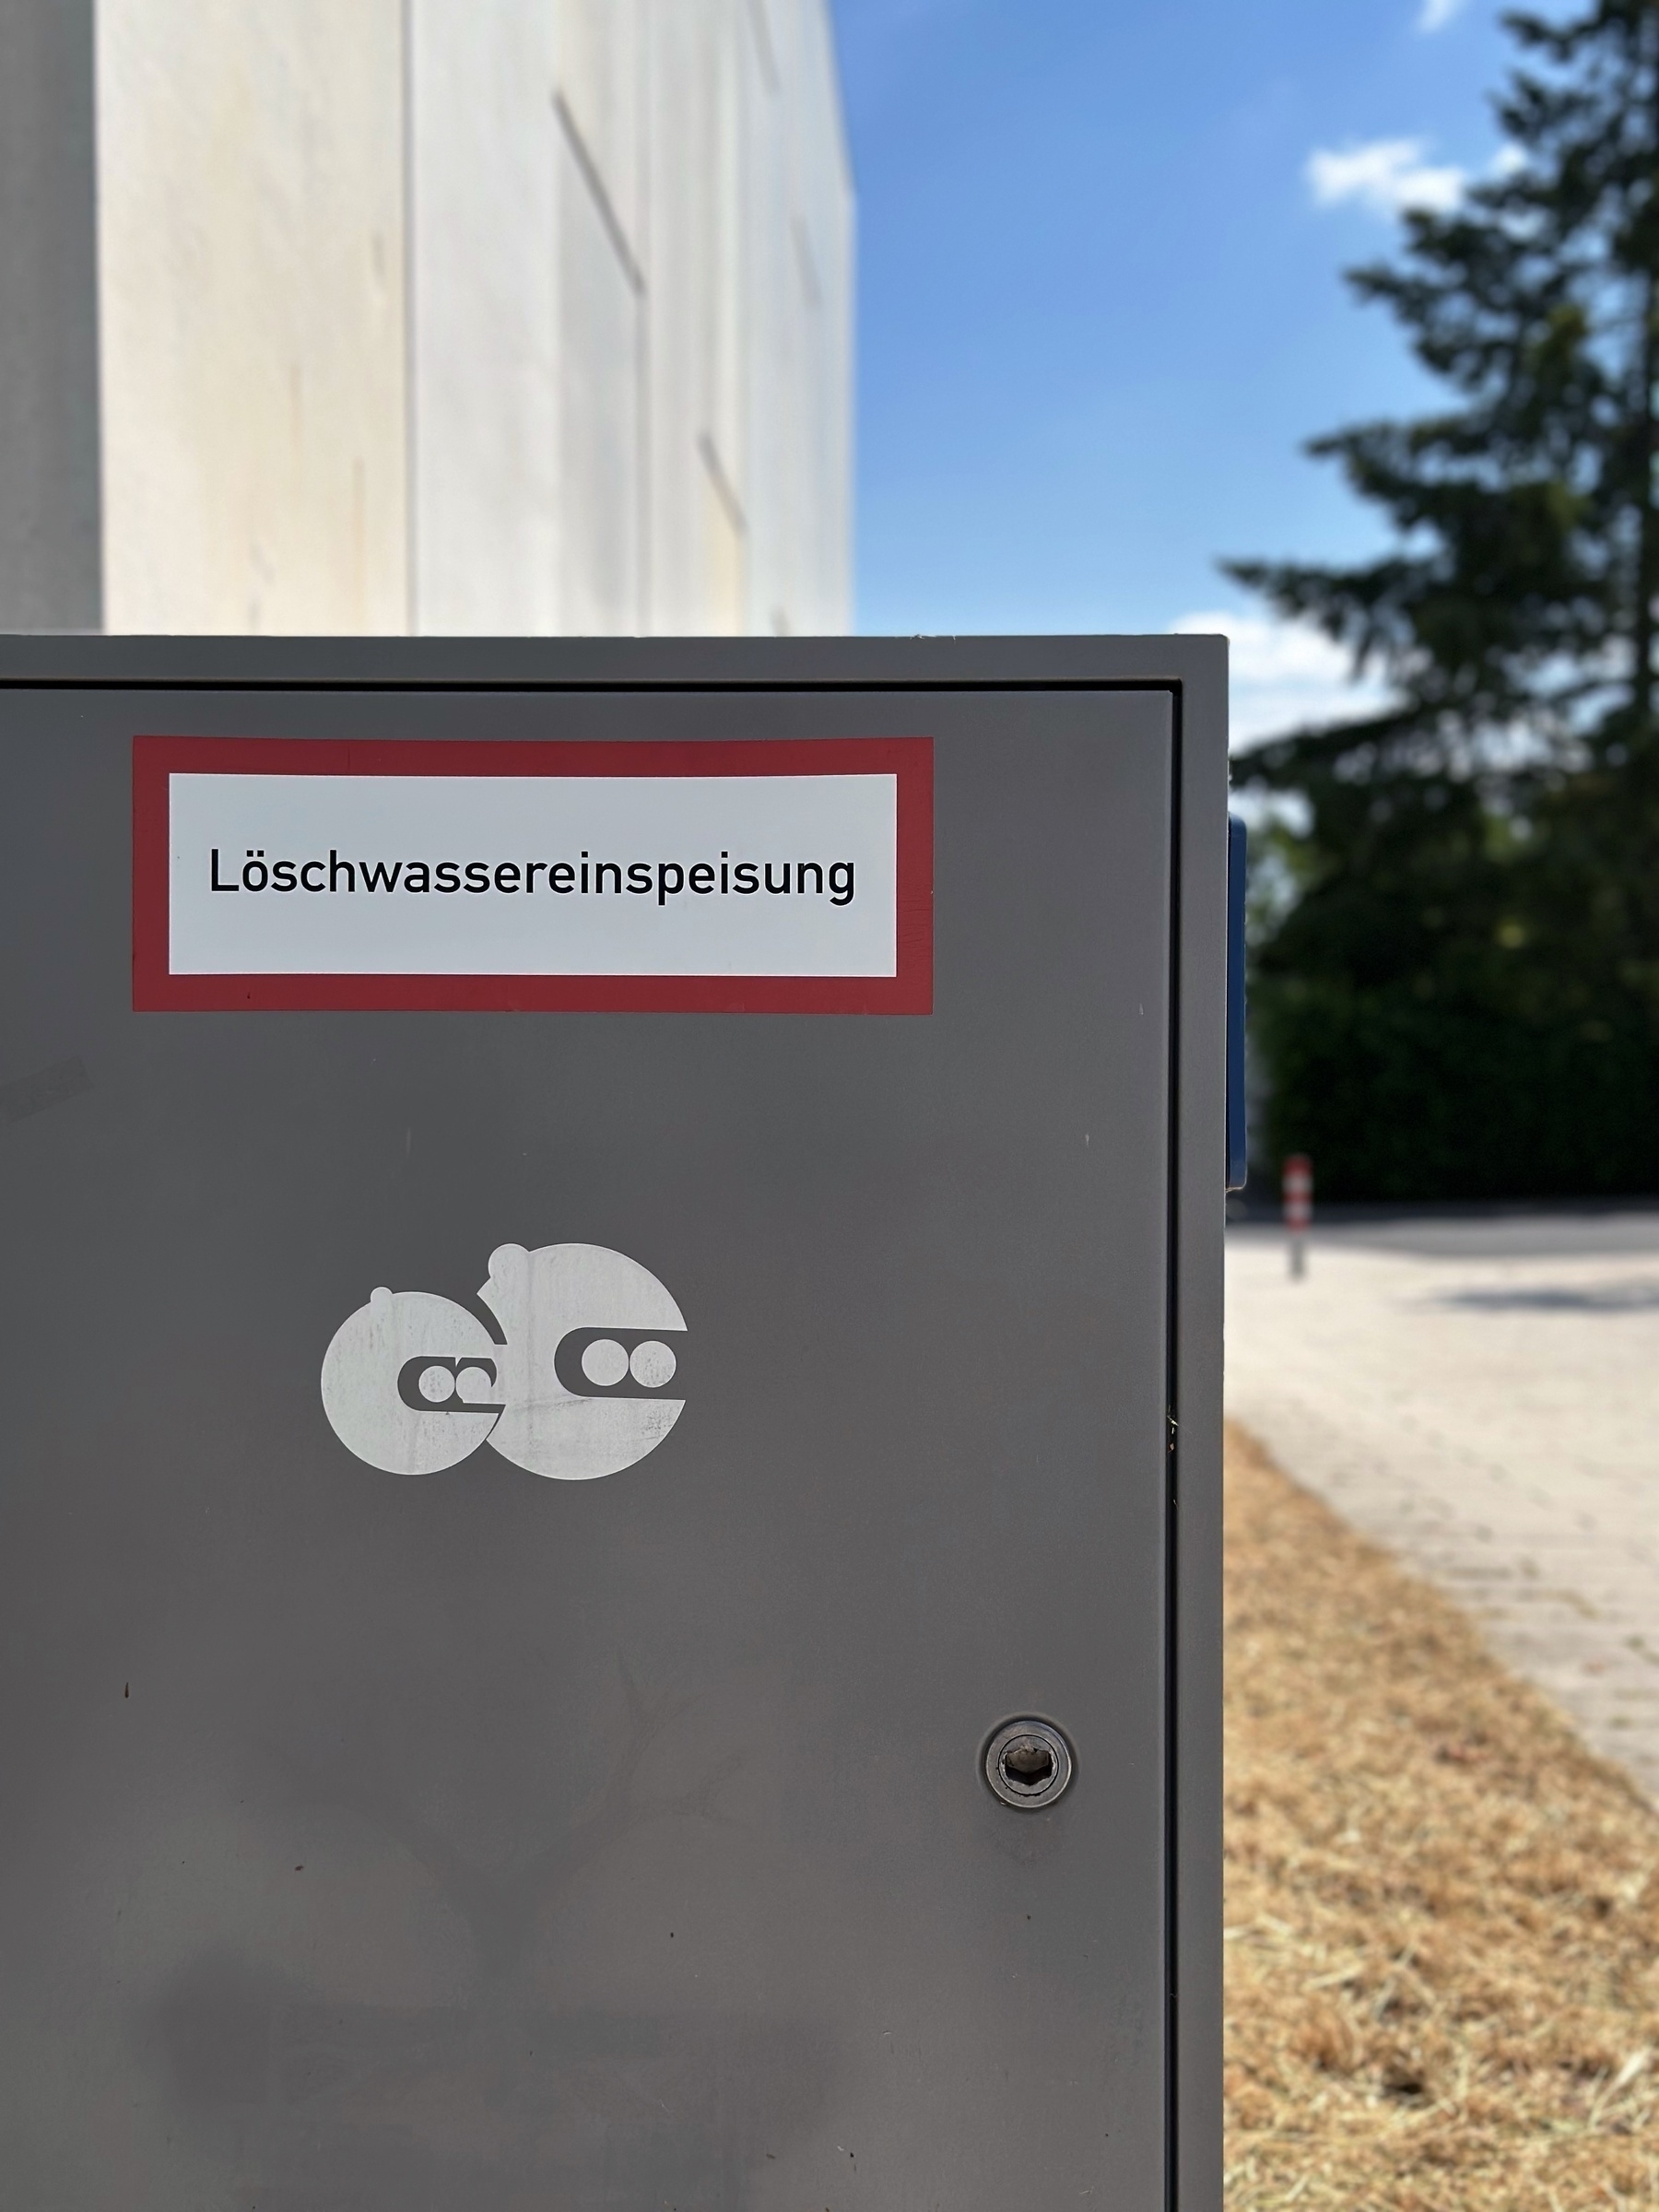 A box for „Löschwassereinspeisung“ with a sticker on it.